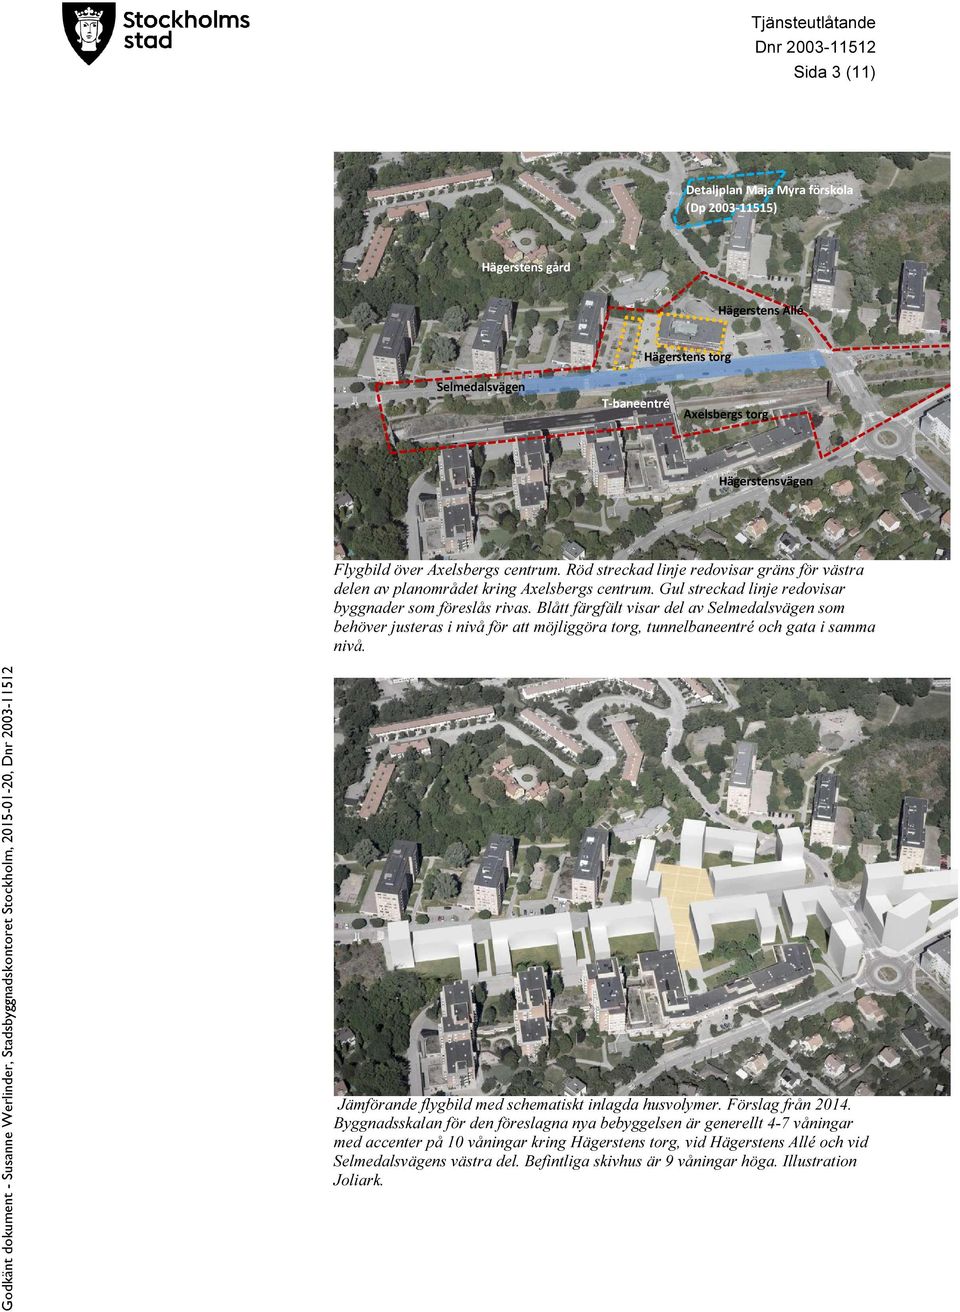 Blått färgfält visar del av Selmedalsvägen som behöver justeras i nivå för att möjliggöra torg, tunnelbaneentré och gata i samma nivå. Jämförande flygbild med schematiskt inlagda husvolymer.